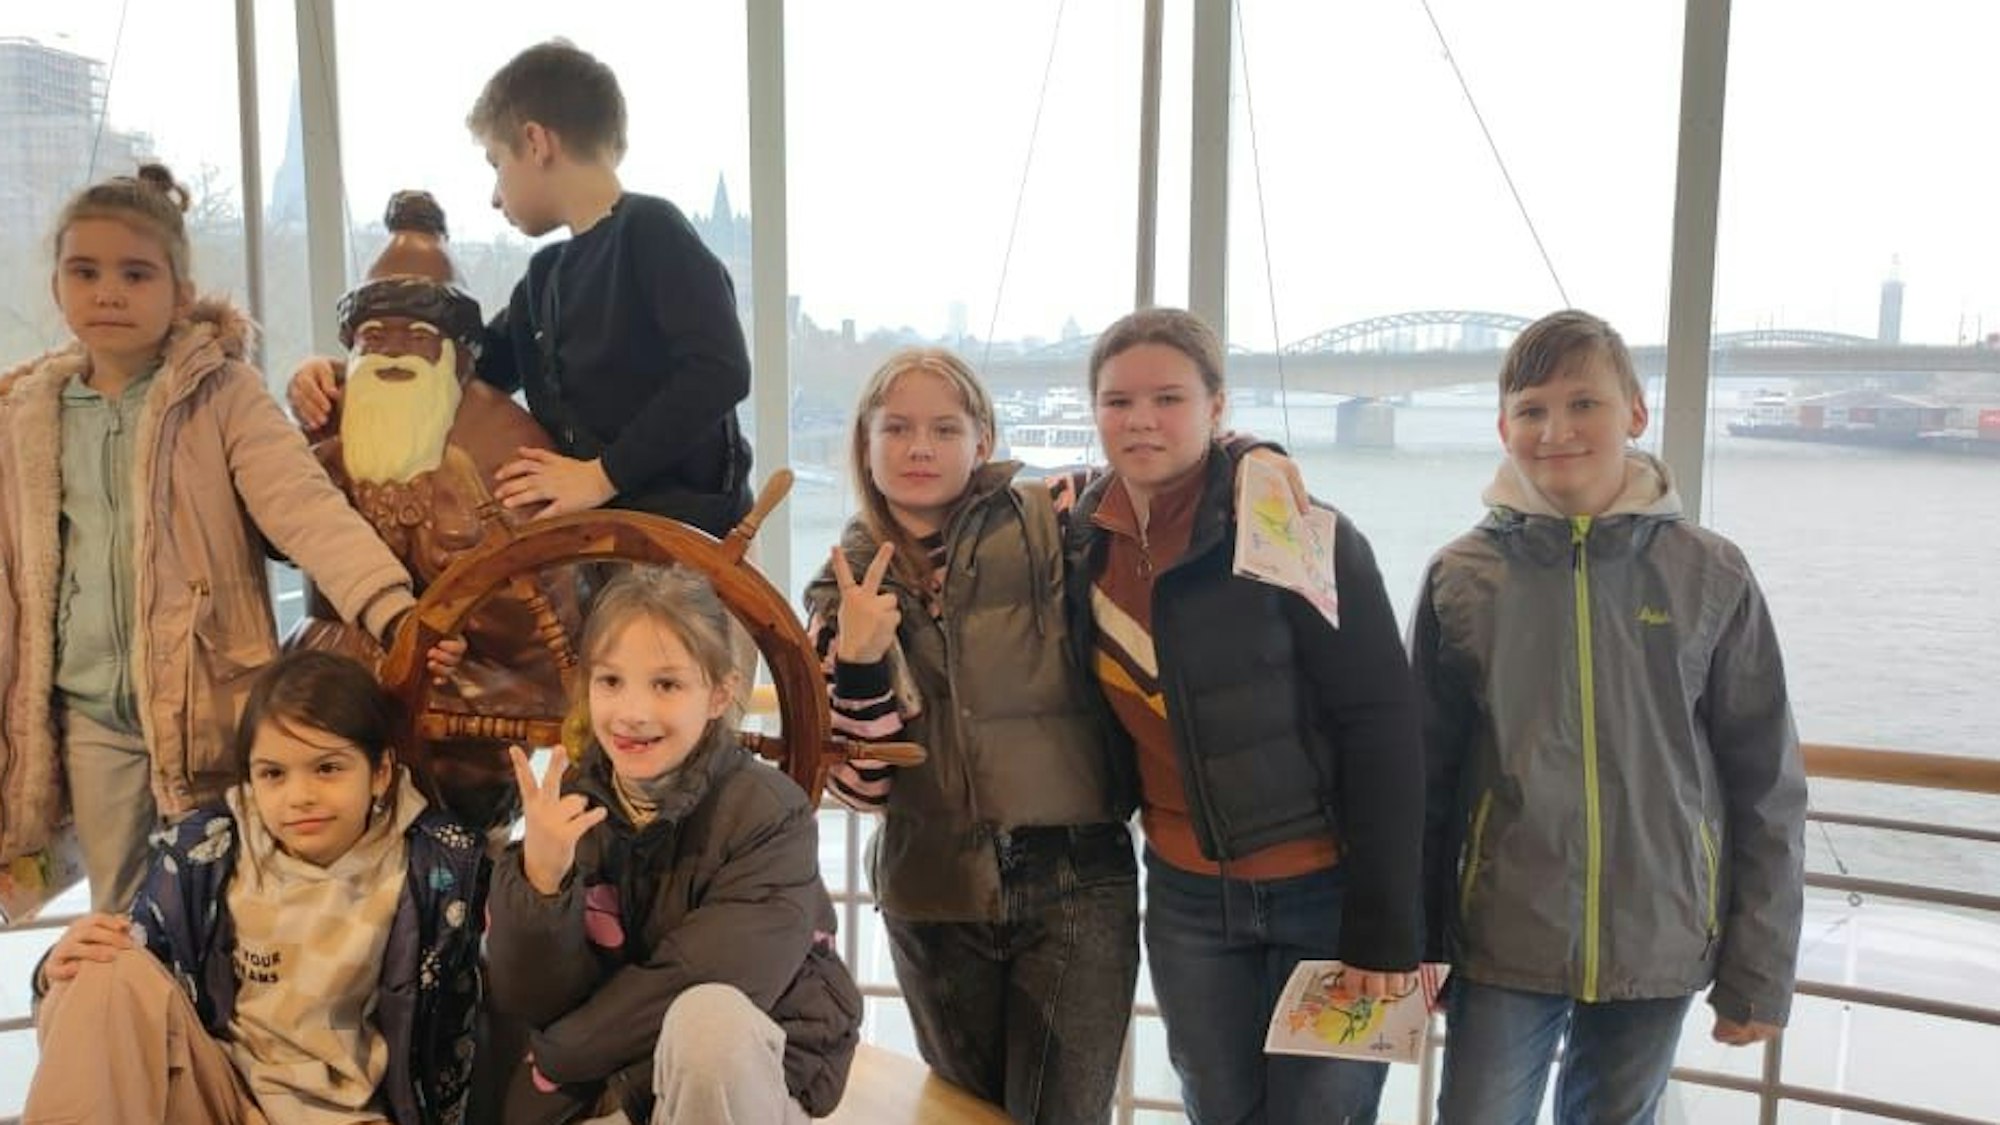 Sieben gehörlose und geflüchtete Kinder des Kölner Vereins Shahrzad stehen hinter einem Ruder im Kölner Schokoladenmuseum